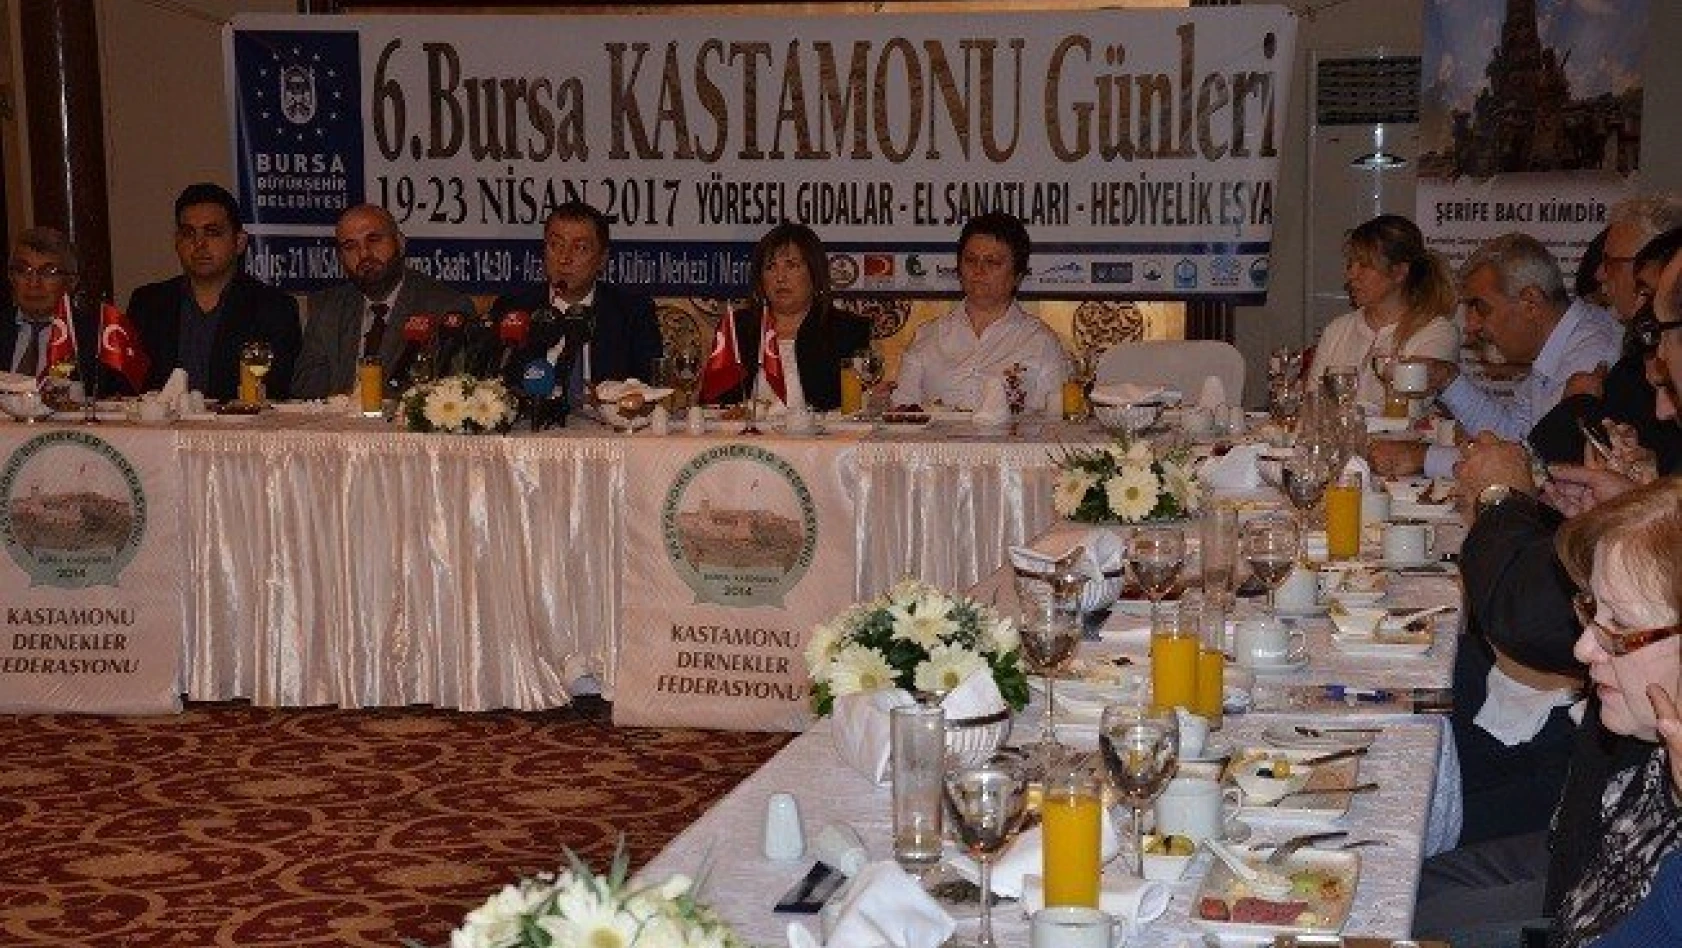 Kastamonu Bursa'ya taşınıyor